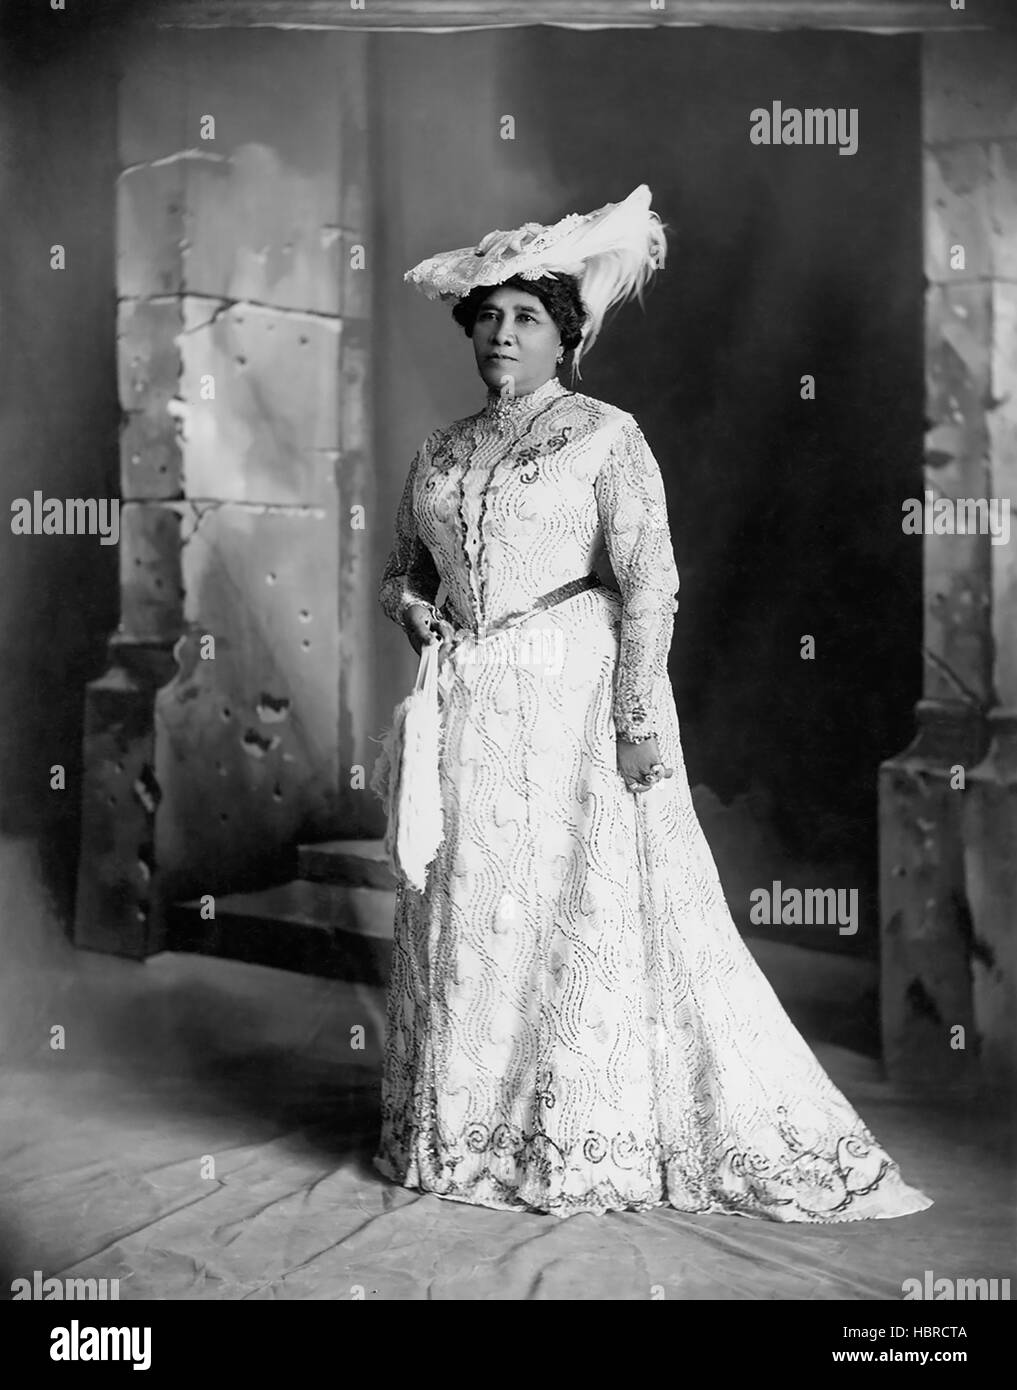 La Reine Liliuokalani (1838-1917) était le royaume de la première reine et dernière règle souveraine. Elle a régné de 1891 jusqu'en 1893 lorsque la monarchie a été renversée. (Photo de Davey) Banque D'Images